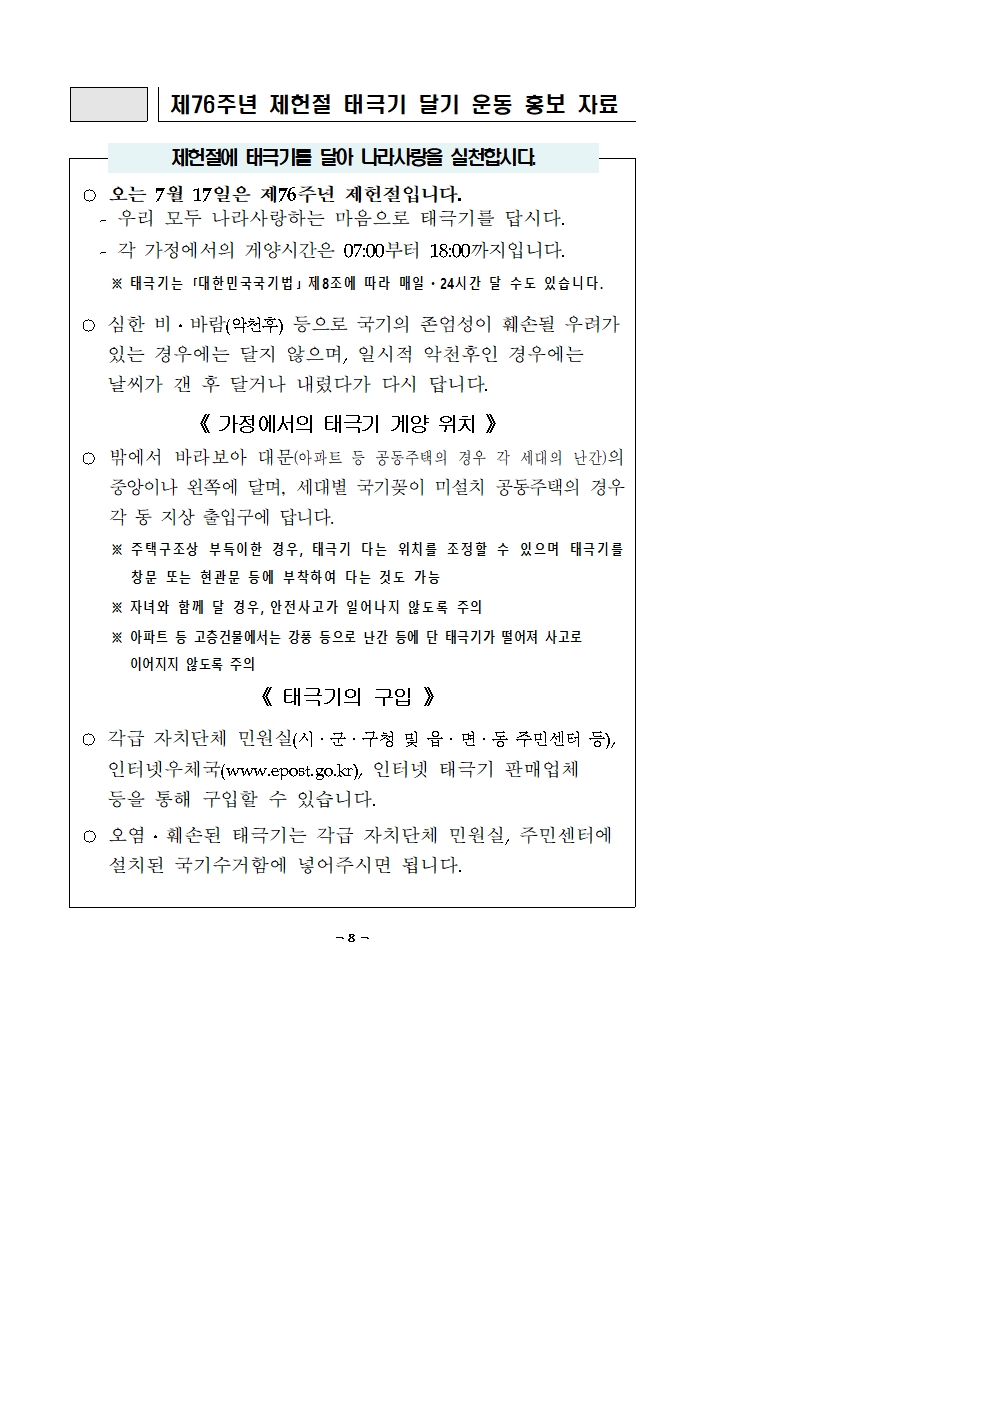 제헌절 태극기 달기 운동 홍보자료001